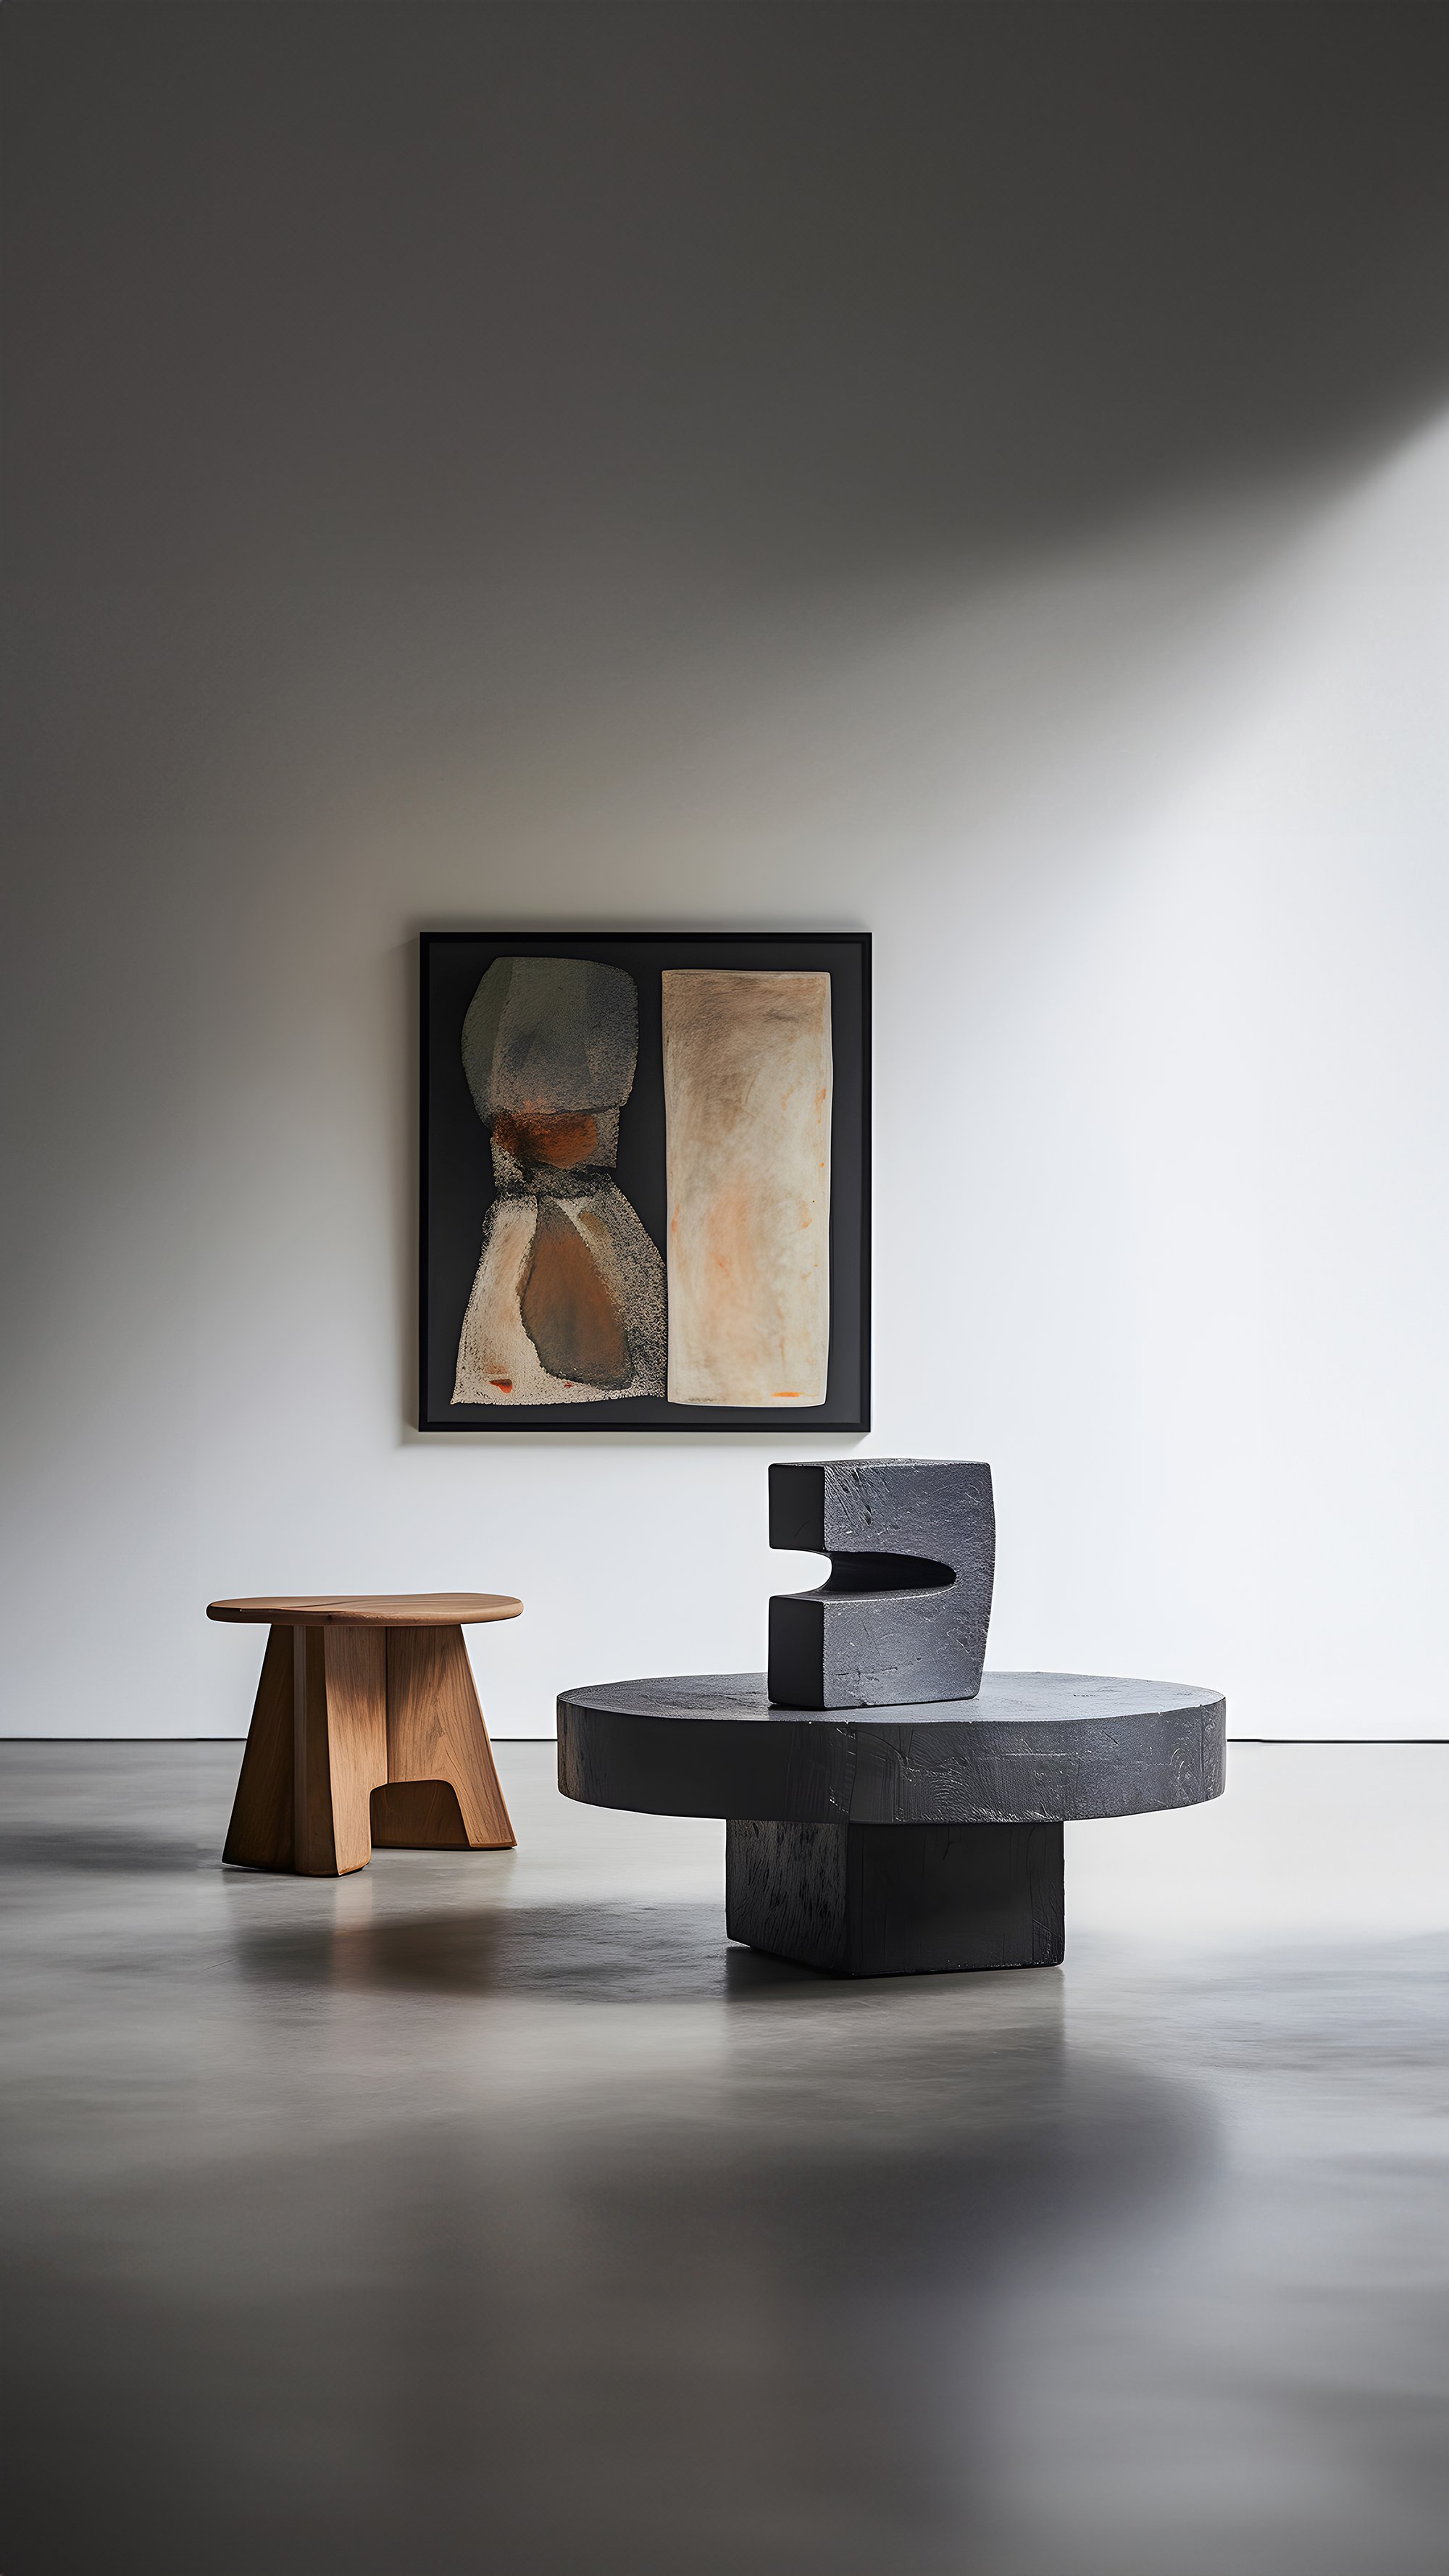 Gallery-Style Unseen Force #5 Solid Oak Table by Joel Escalona, Luxe Decor — 5.jpg